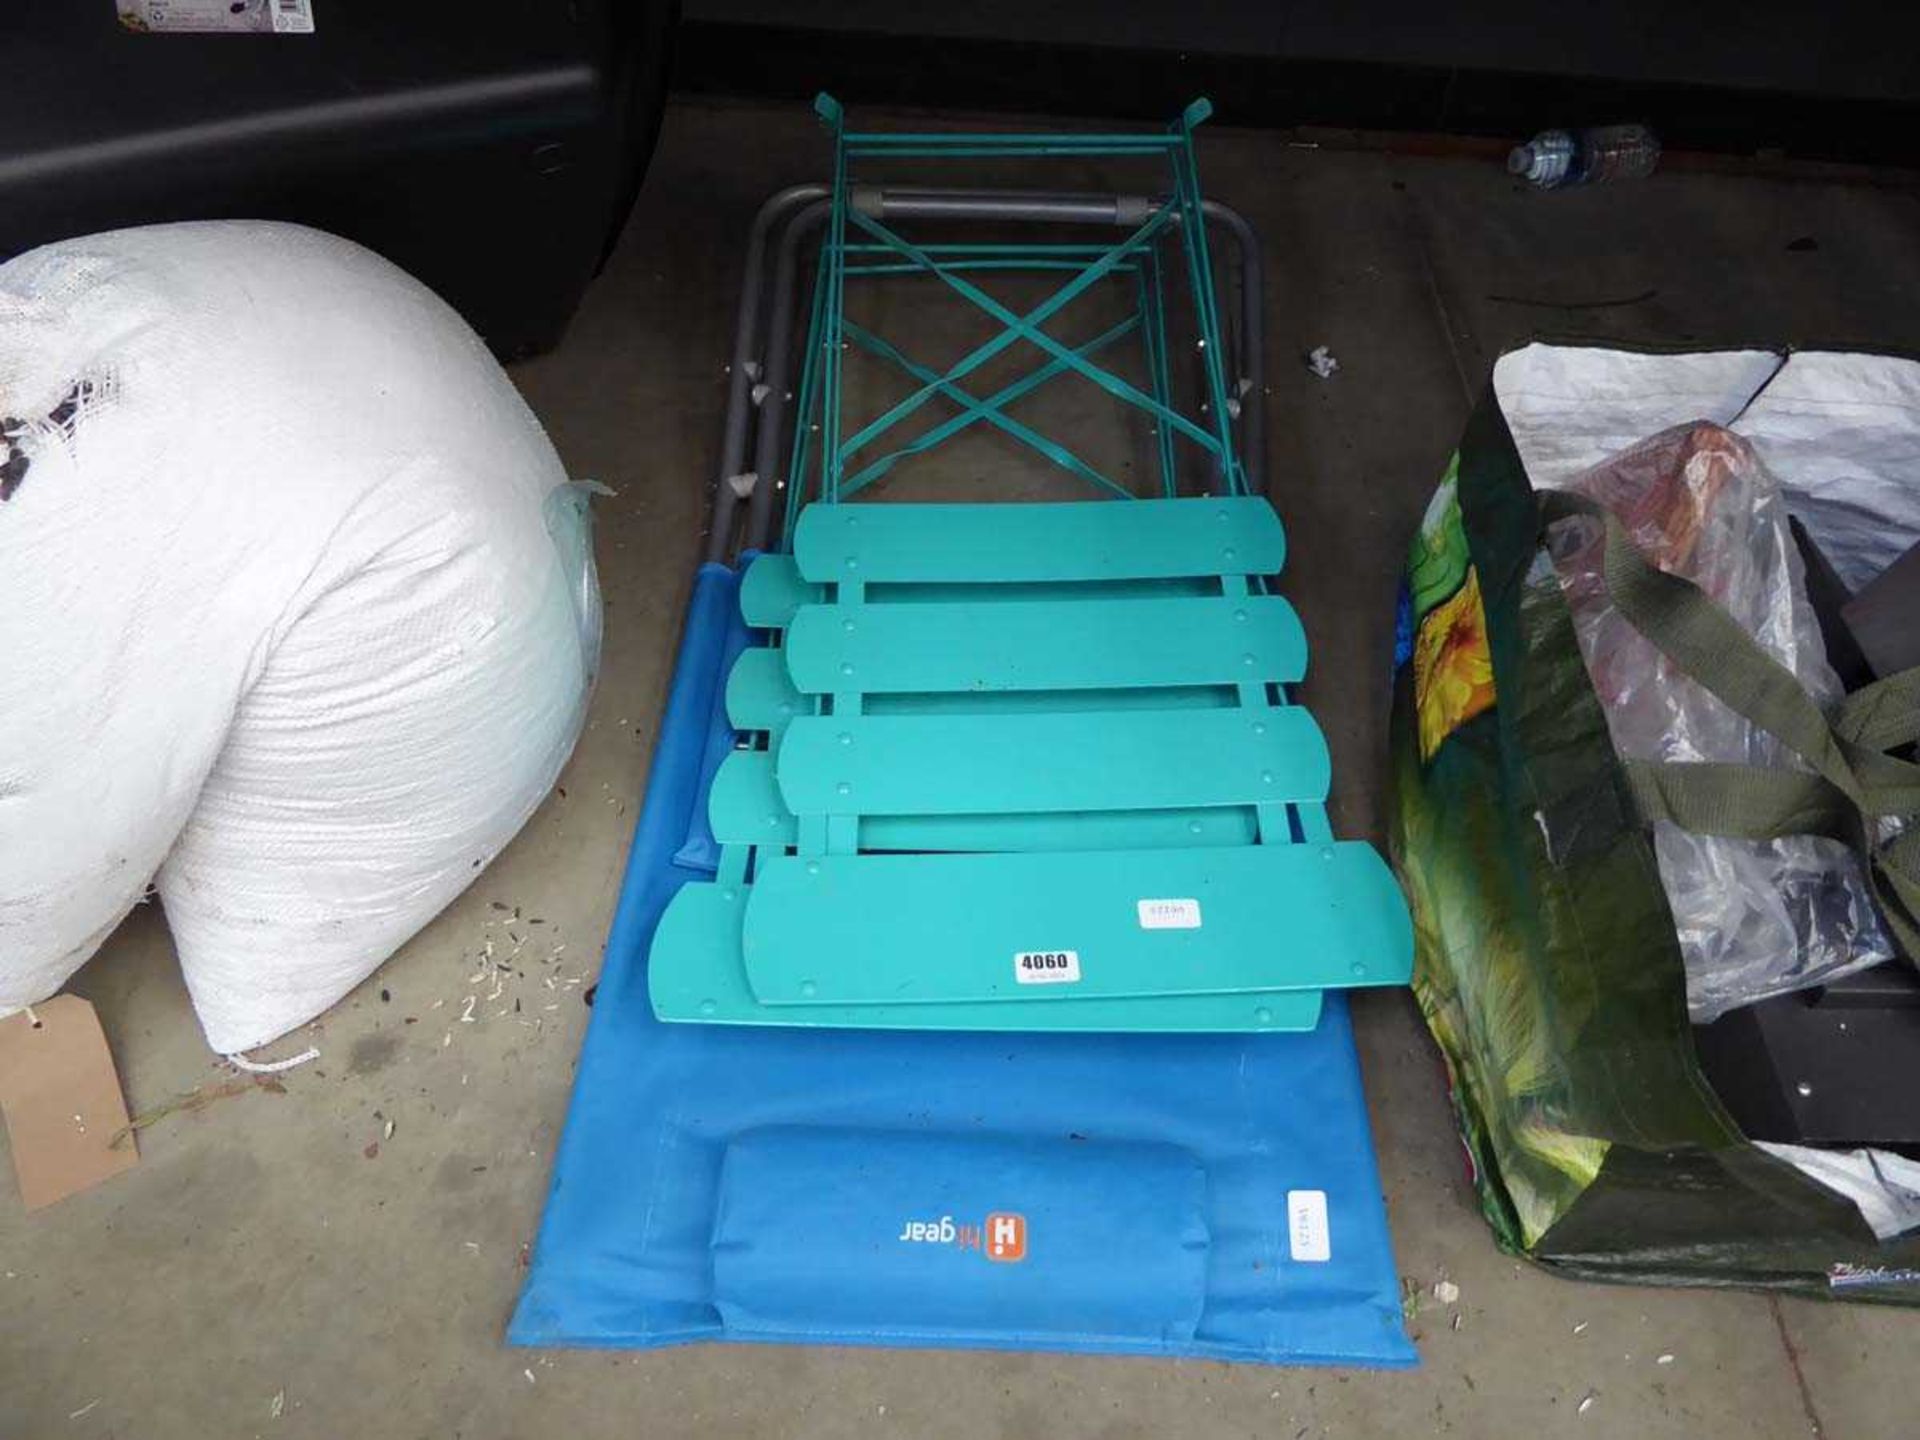 2 green foldup chairs and a HighGear chair